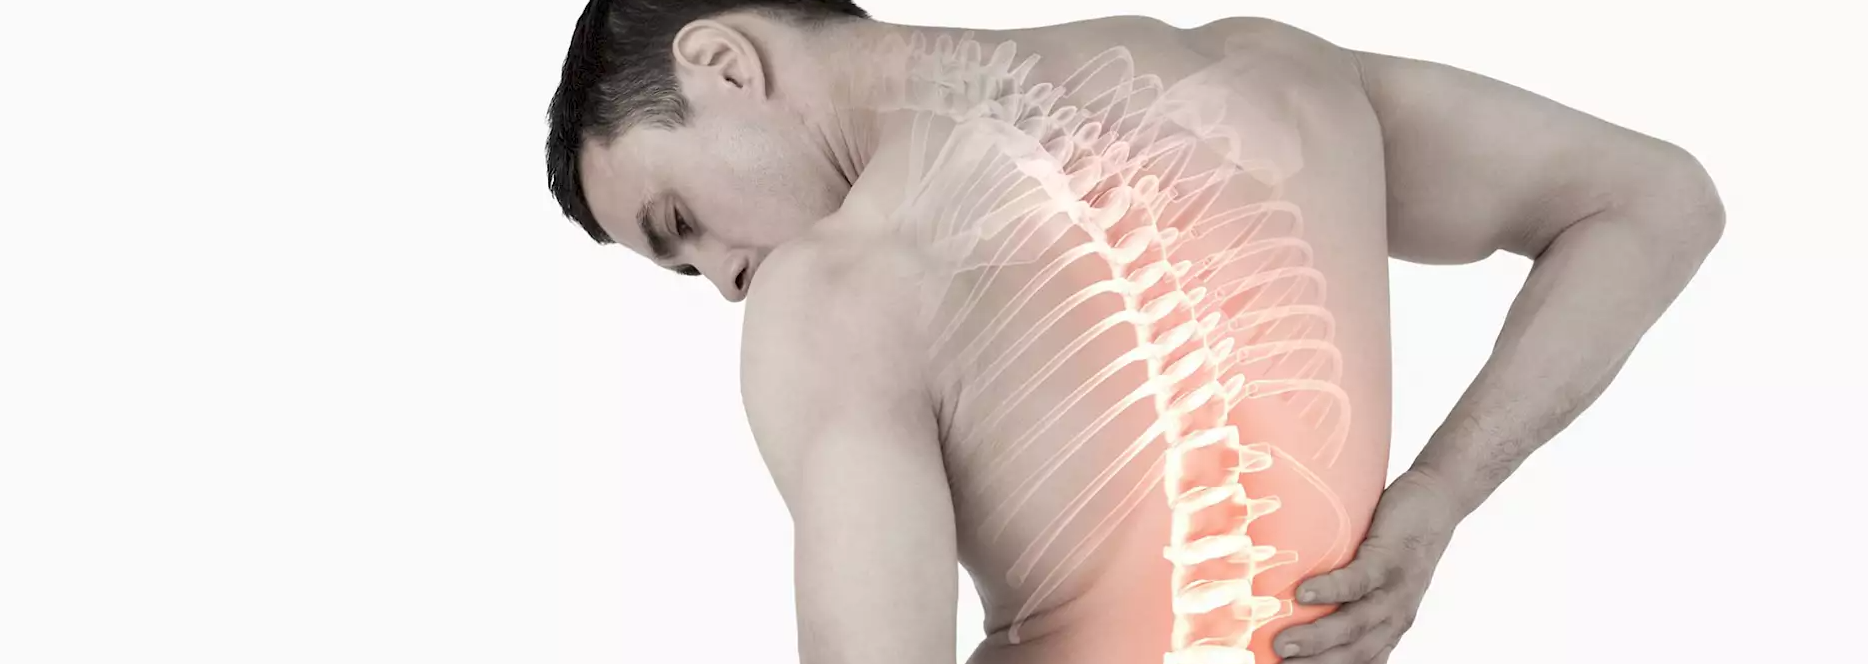 Болит спина возле позвоночника. Боль в спине. Припухлость на спине справа. Фото больных спинной сухотки.